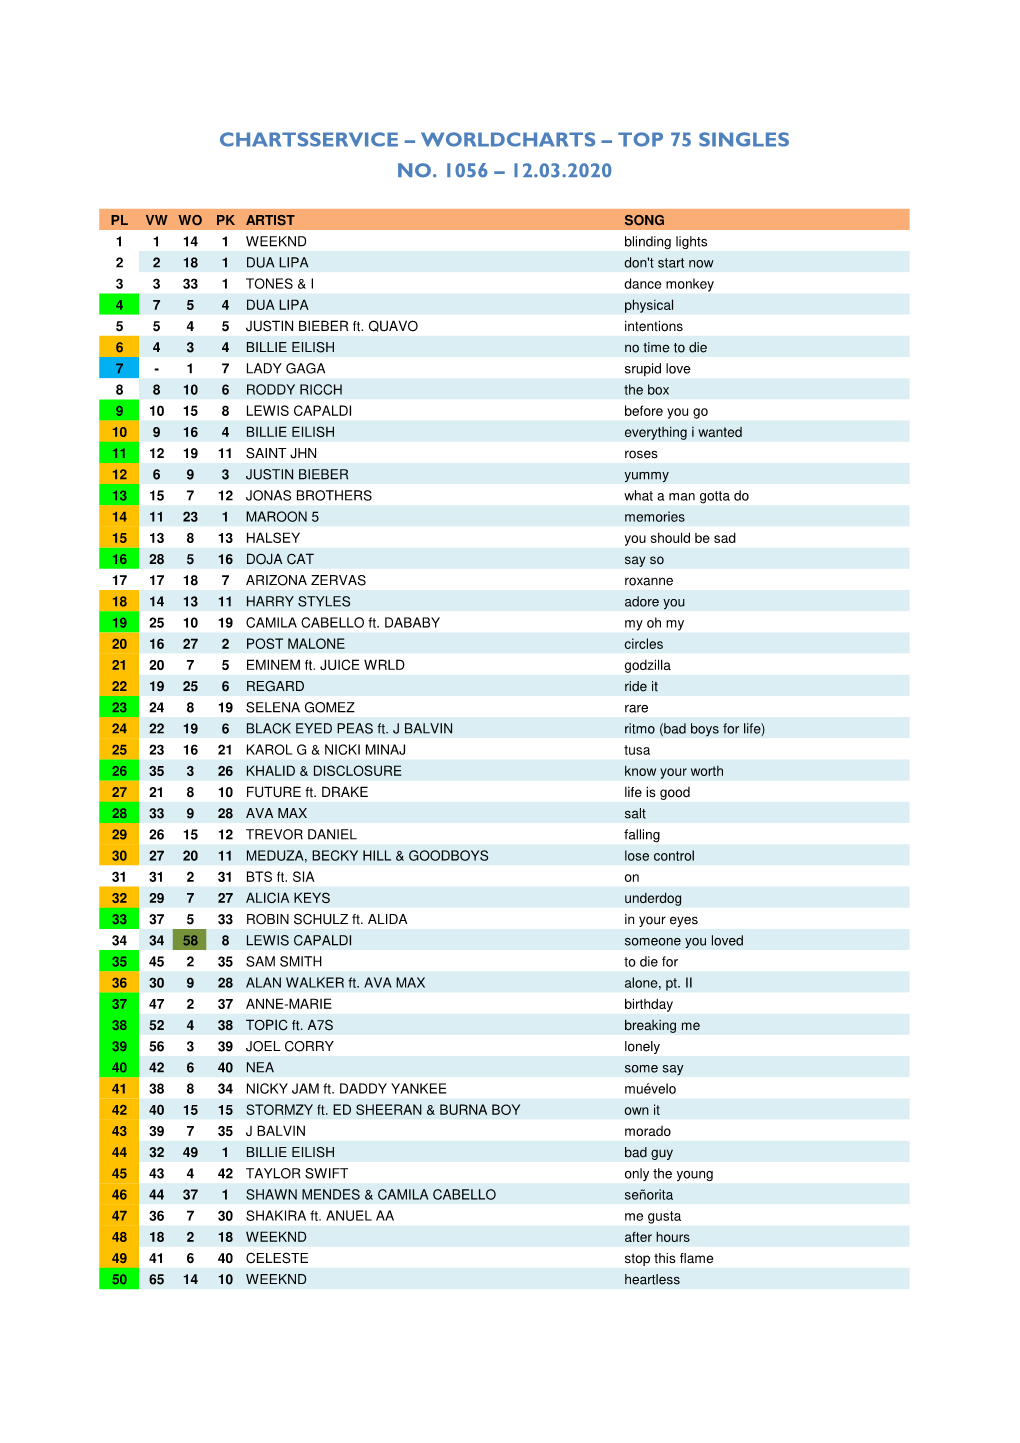 Worldcharts TOP 75 + Album TOP 30 Vom 12.02.2020